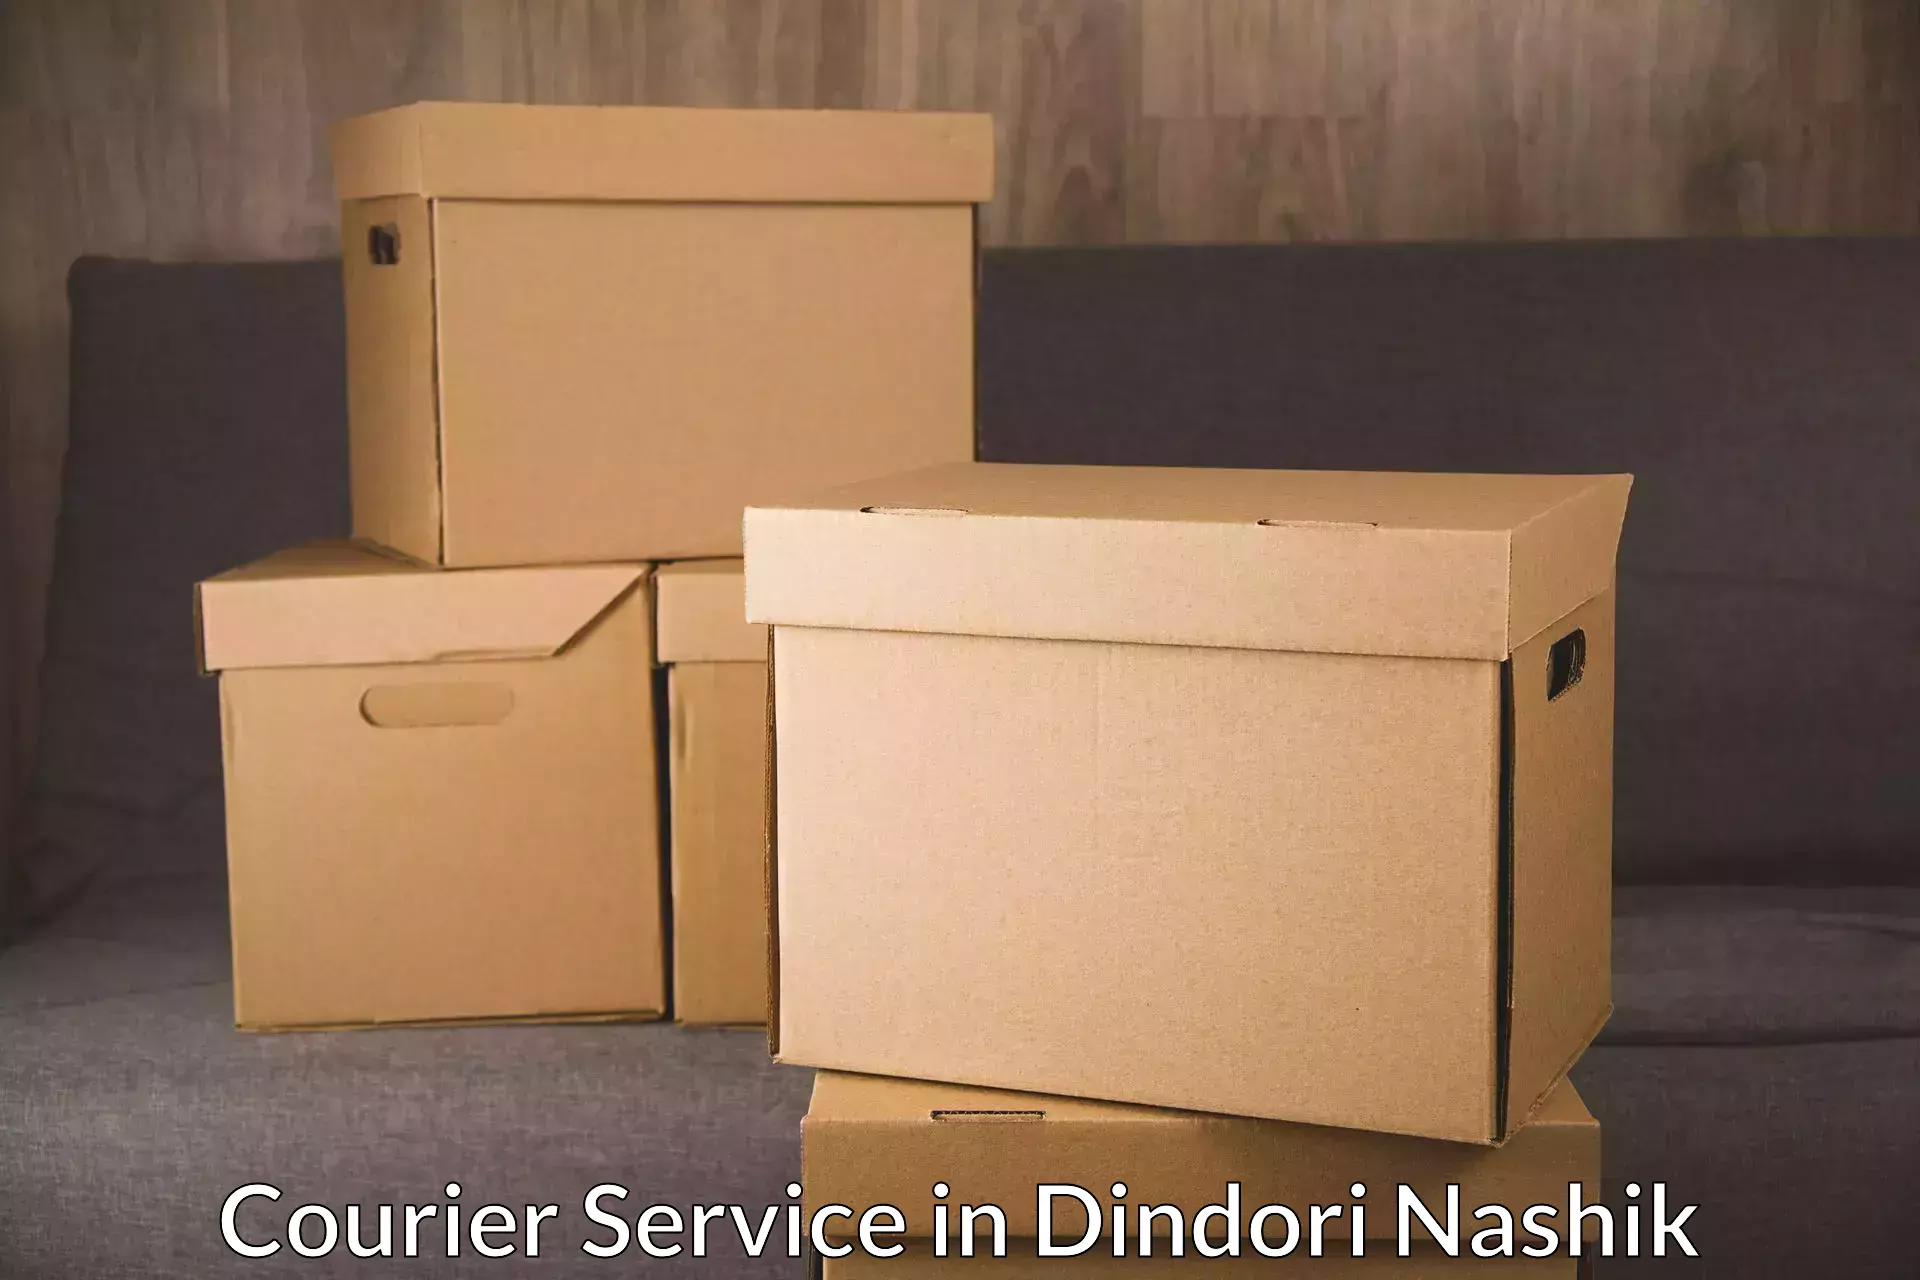 High value parcel delivery in Dindori Nashik